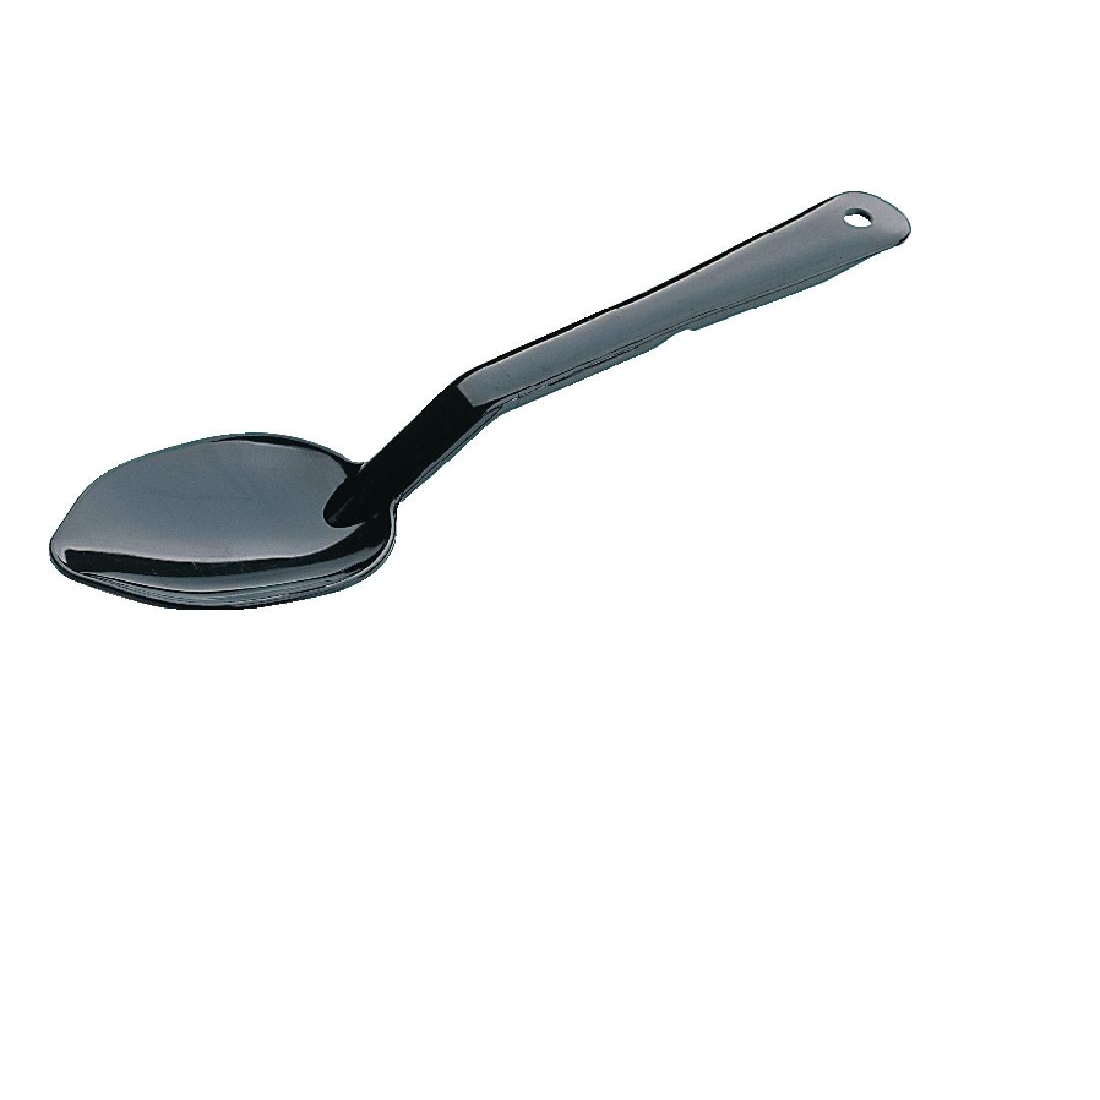 Matfer Exoglass Plain Serving Spoon13"